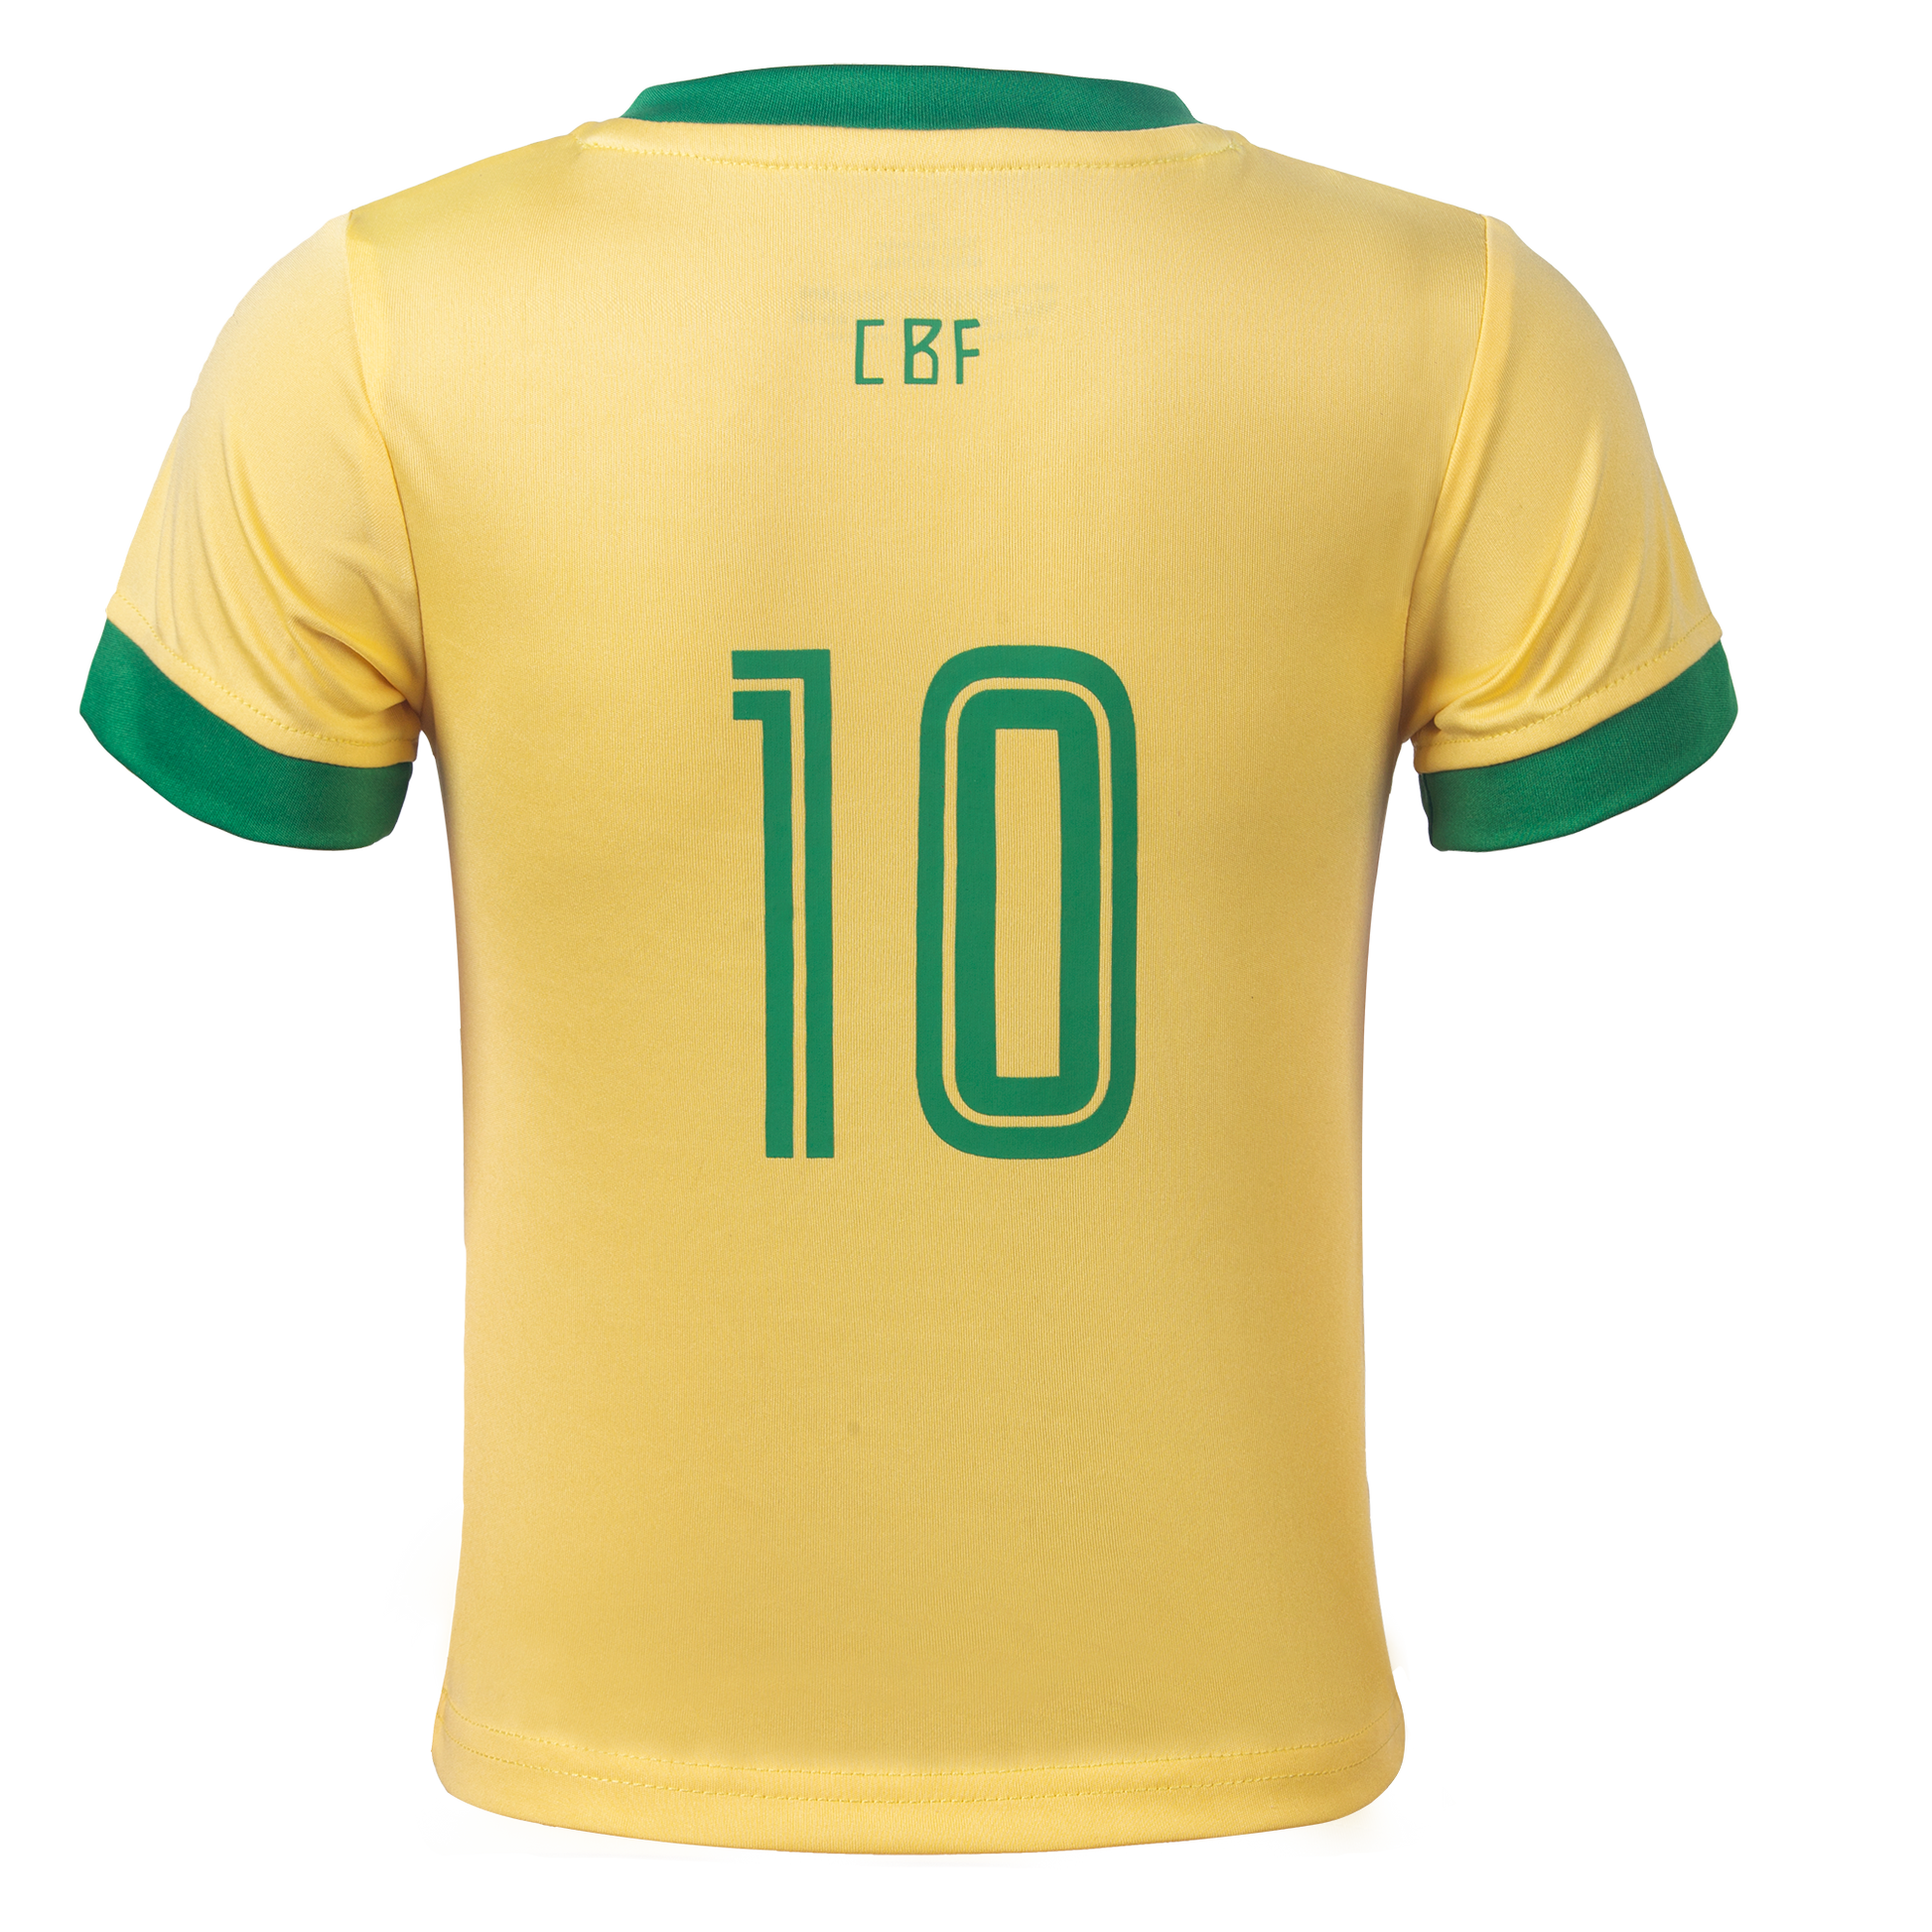 brazil jersey,brazil t shirt,brazil football jersey,brazil football jersey  for kids,brazil football jersey for boys,brazil jersey for boys,brrazi